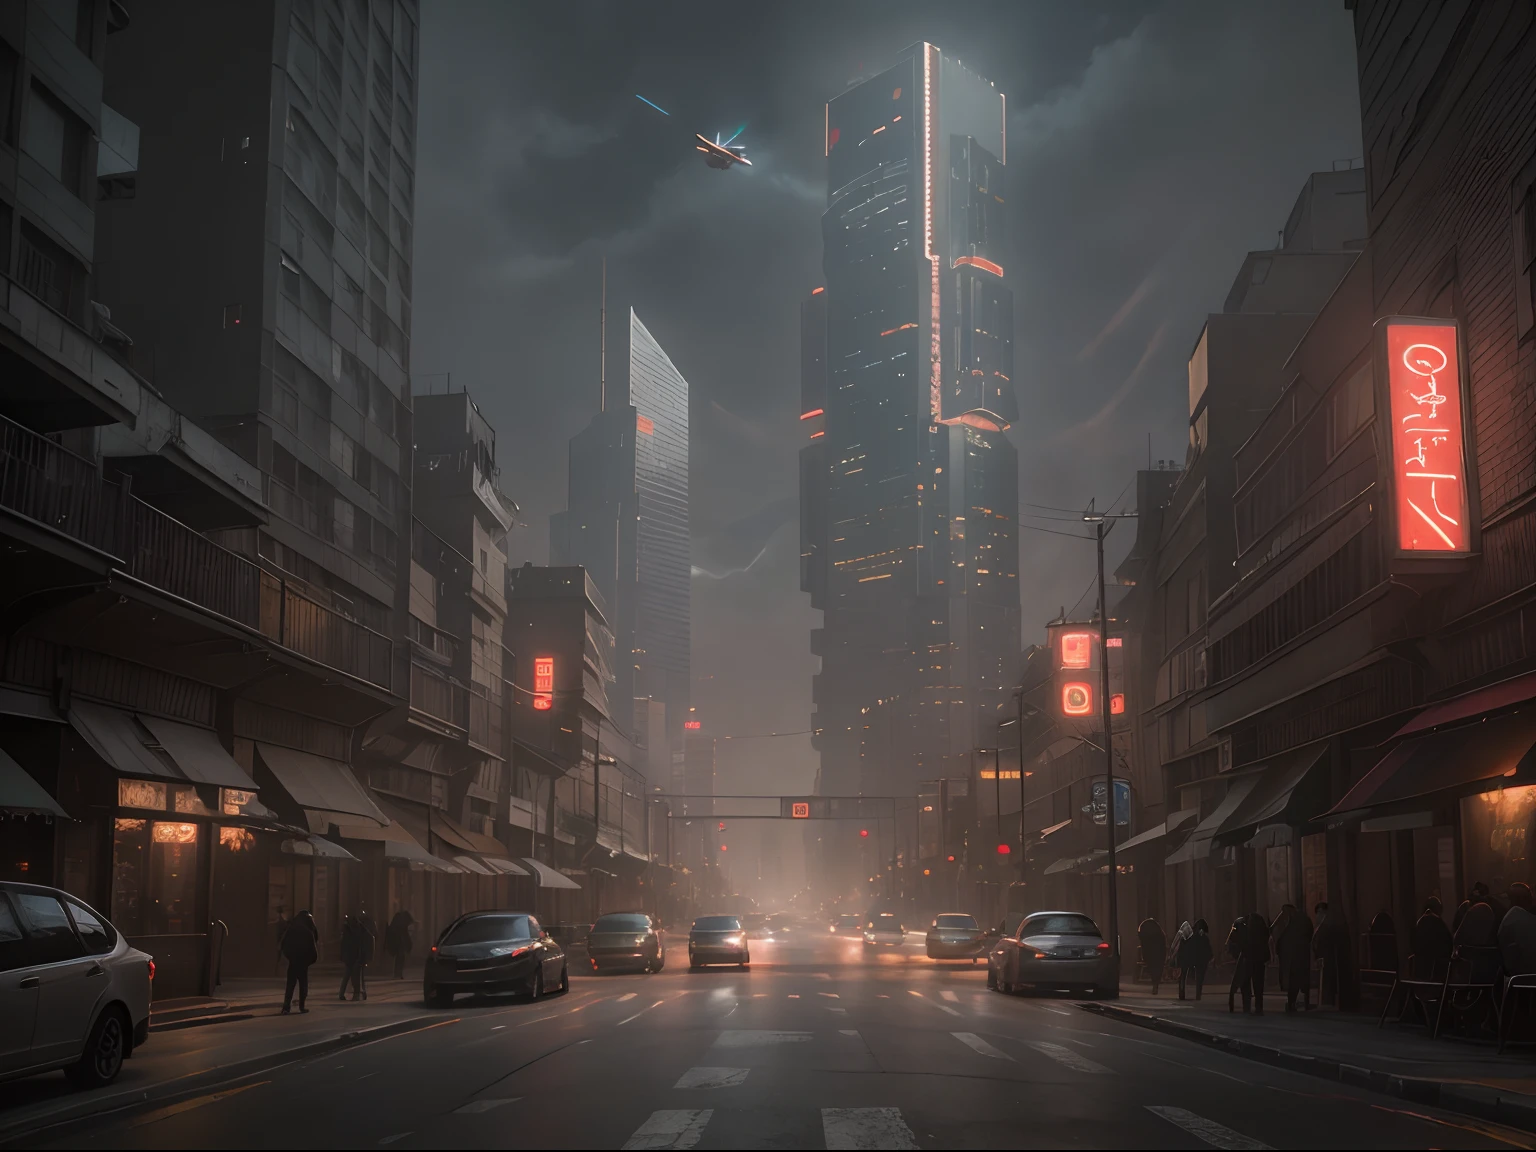 Escena callejera del paisaje urbano Cyberpunk con imponentes rascacielos, Letreros de neón brillantes y luces LED., tráfico y ((coches voladores)) en el cielo, dark atmosphere, iluminación cinematográfica.